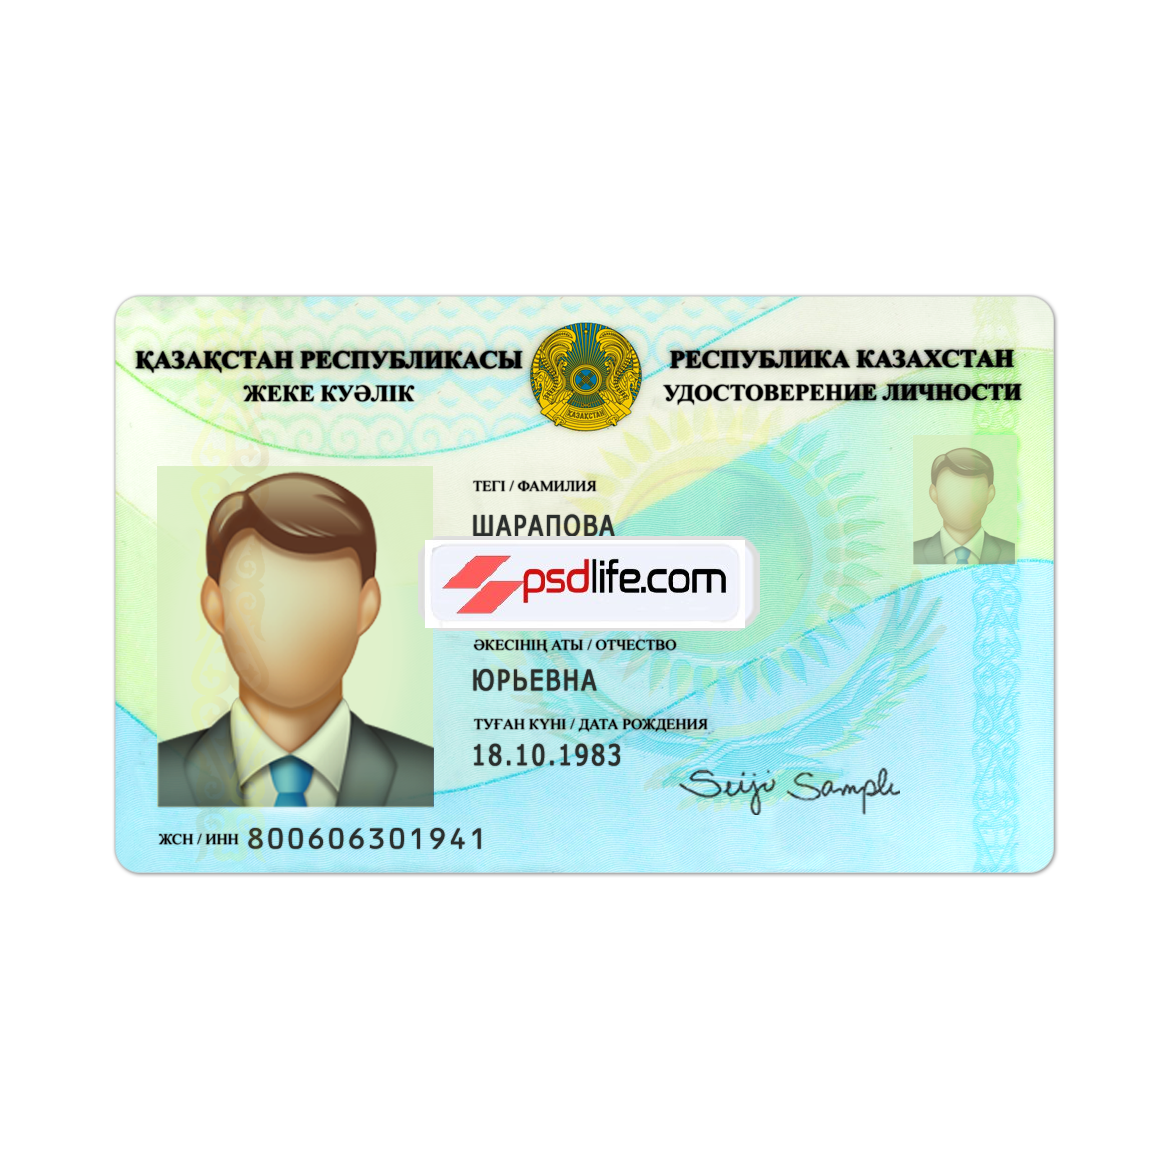 Kazakhstan id card fake psd template editable / Қазақстан идентификаторының жалған PSD үлгісі өңделеді